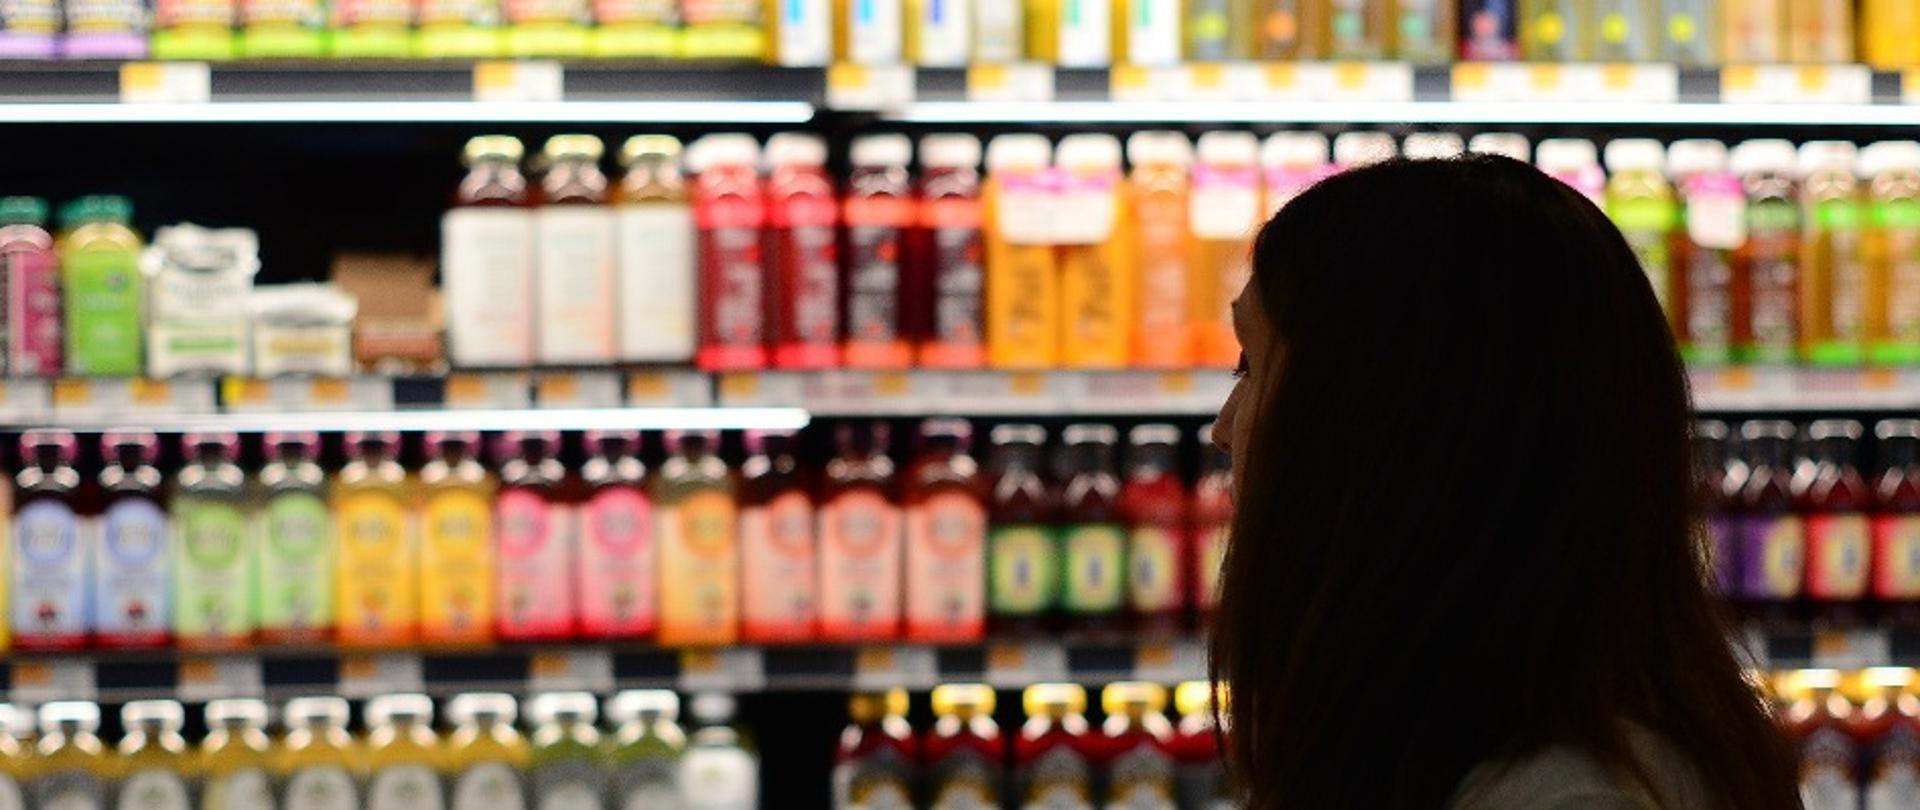 Kobieta w sklepie, patrząca na półki z wieloma kolorowymi napojami.